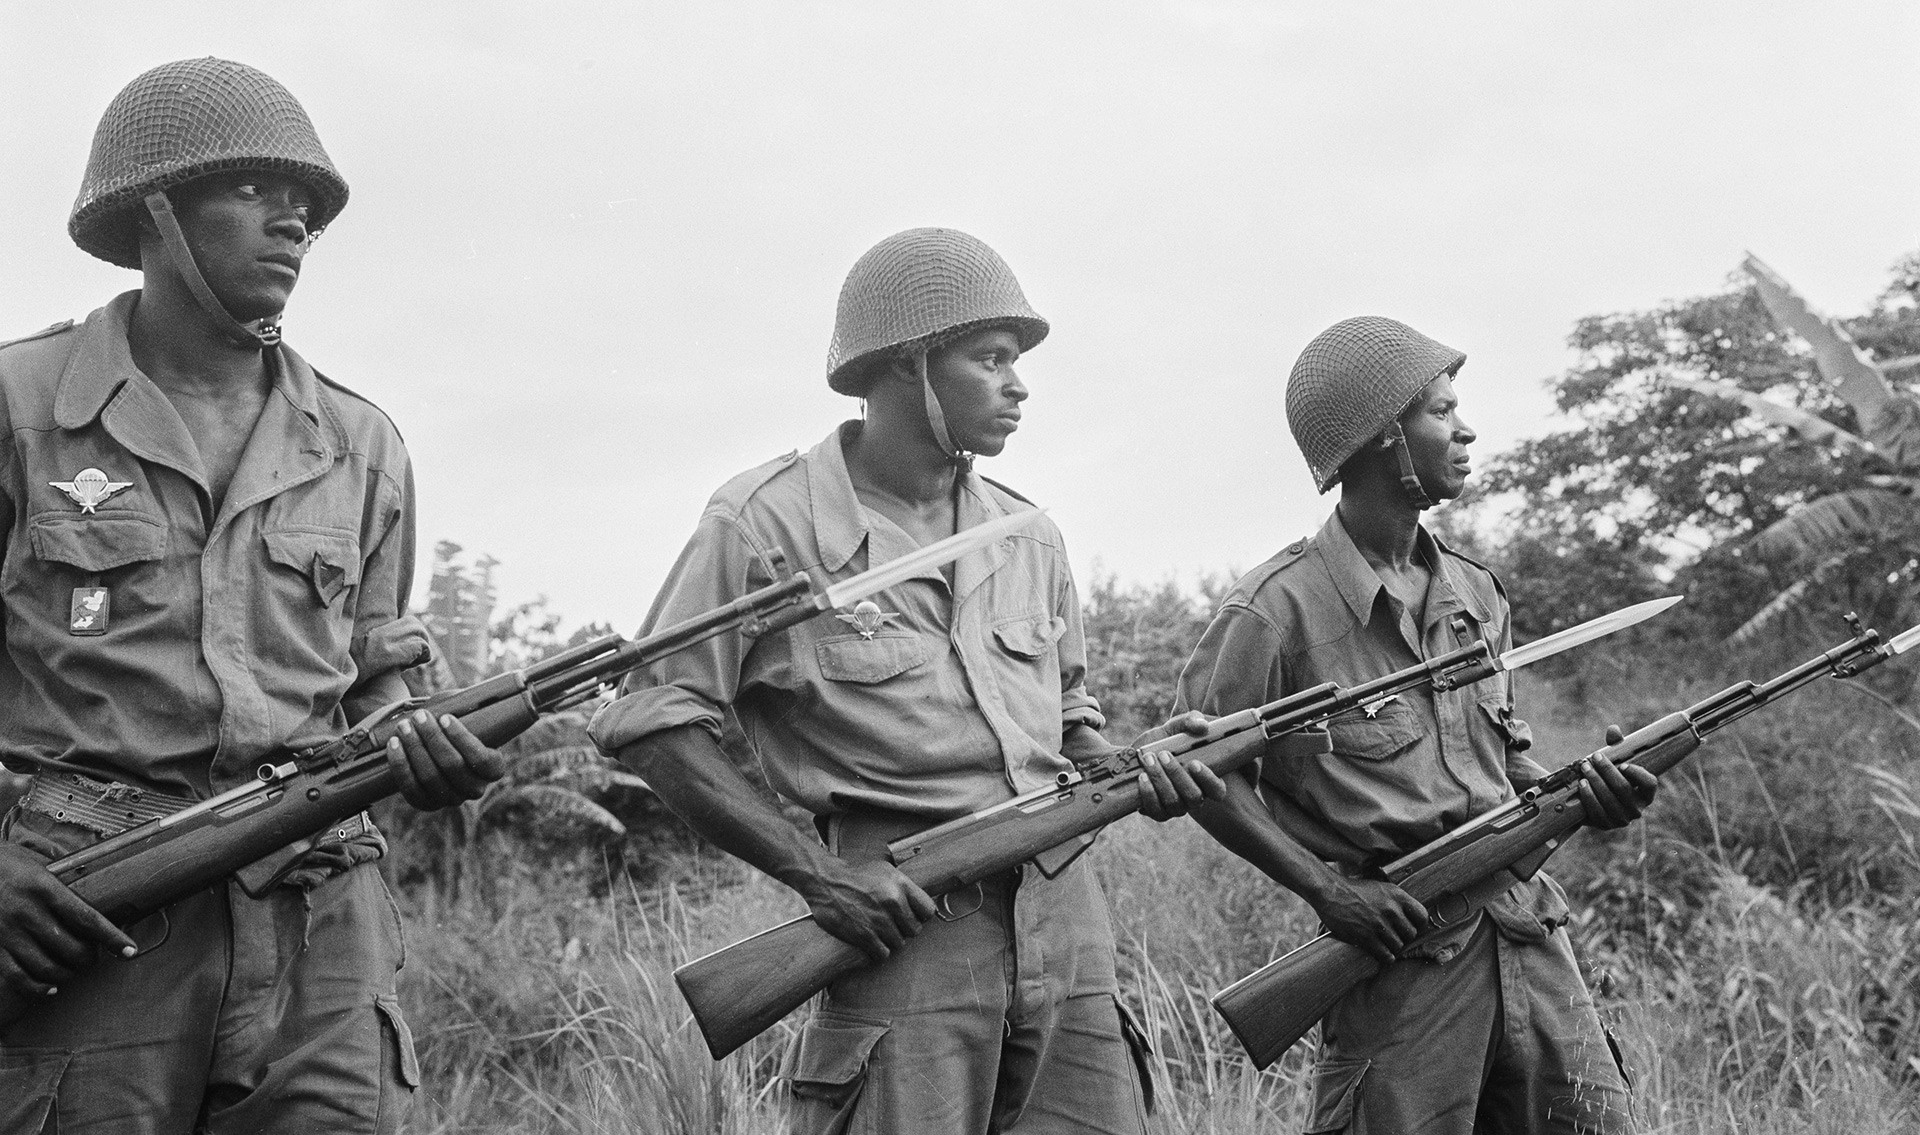 Vojake narodne ljudske vojske Republike Kongo